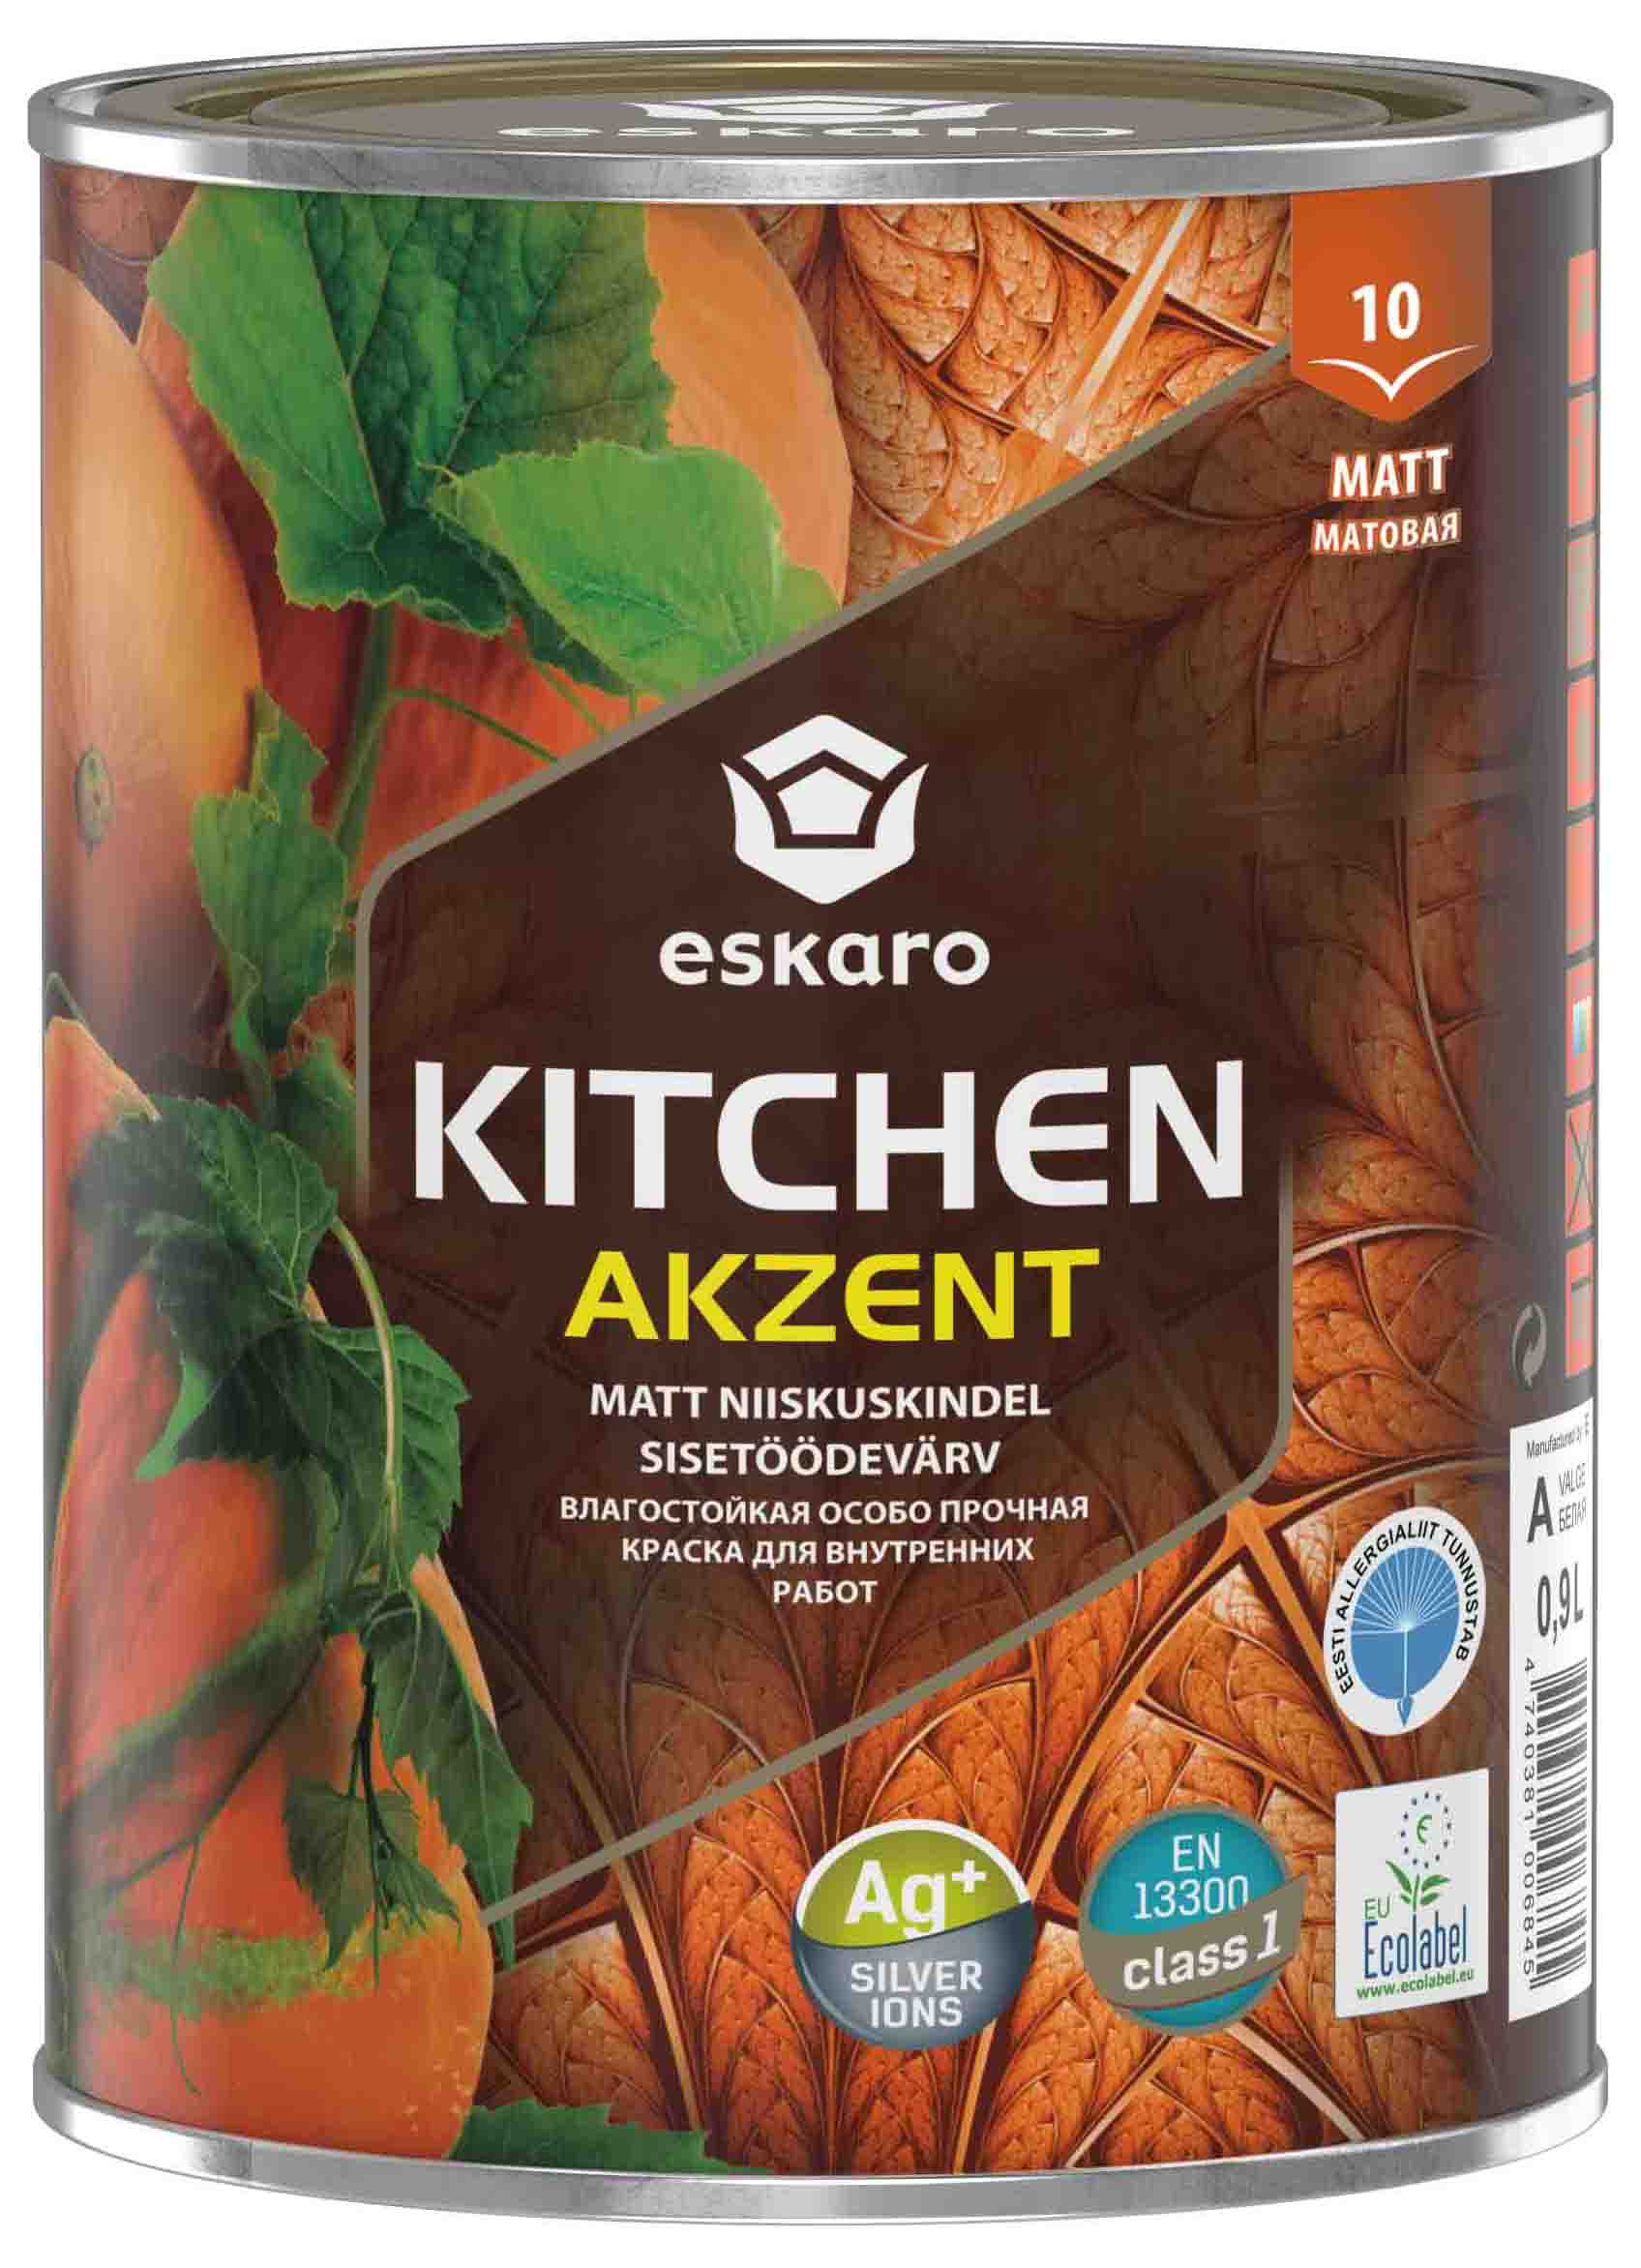 Влагостойкая особо прочная краска Eskaro Akzent Kitchen (База TR - прозрачная) 0,9 л